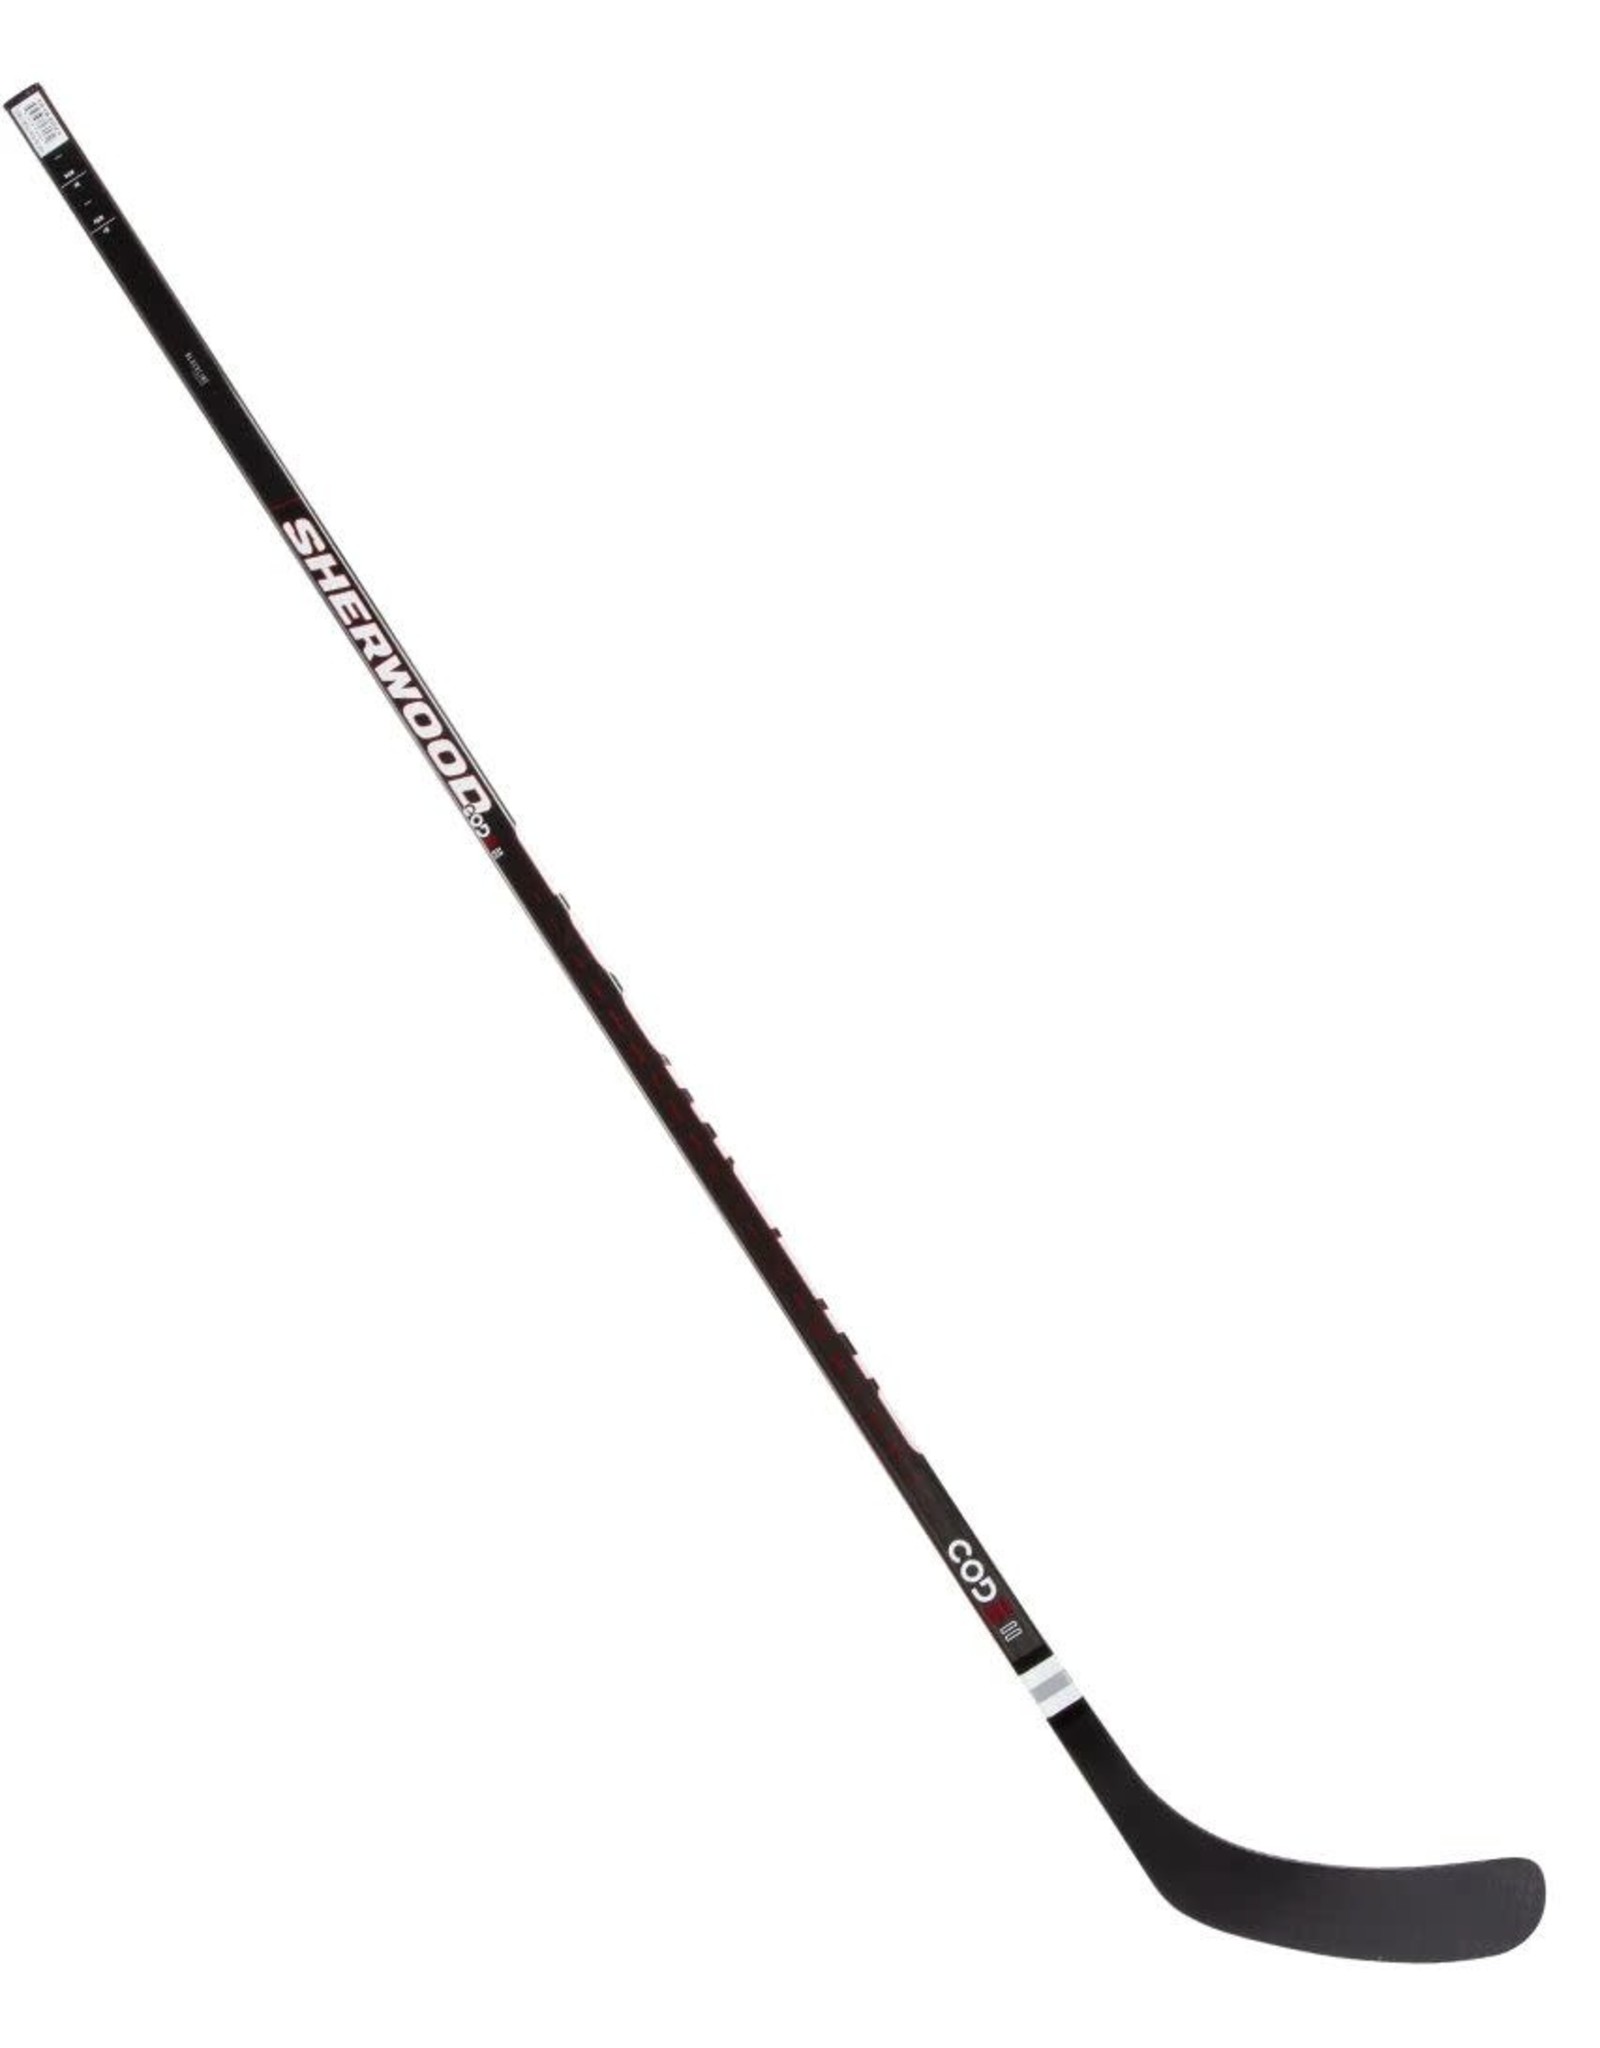 SHER-WOOD Code II Grip, Intermediate, Hockey Stick